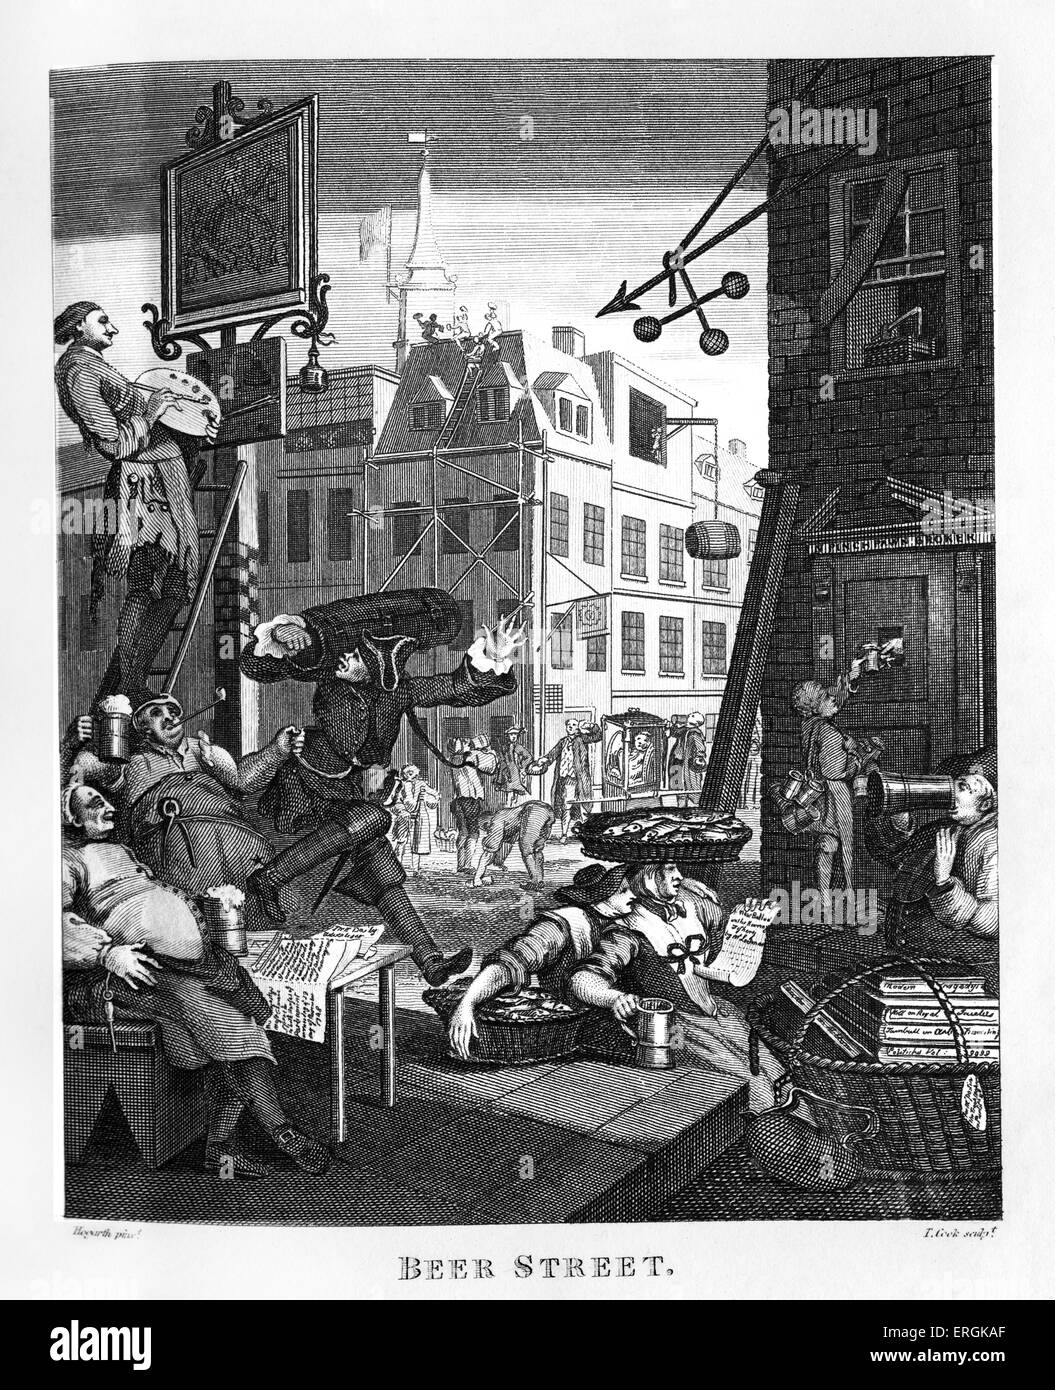 Rue de la bière par William Hogarth, 1751. Combinée avec du gin lane, ces gravures ont appuyé la Loi de 1751 Gin.gravé par Thomas Banque D'Images